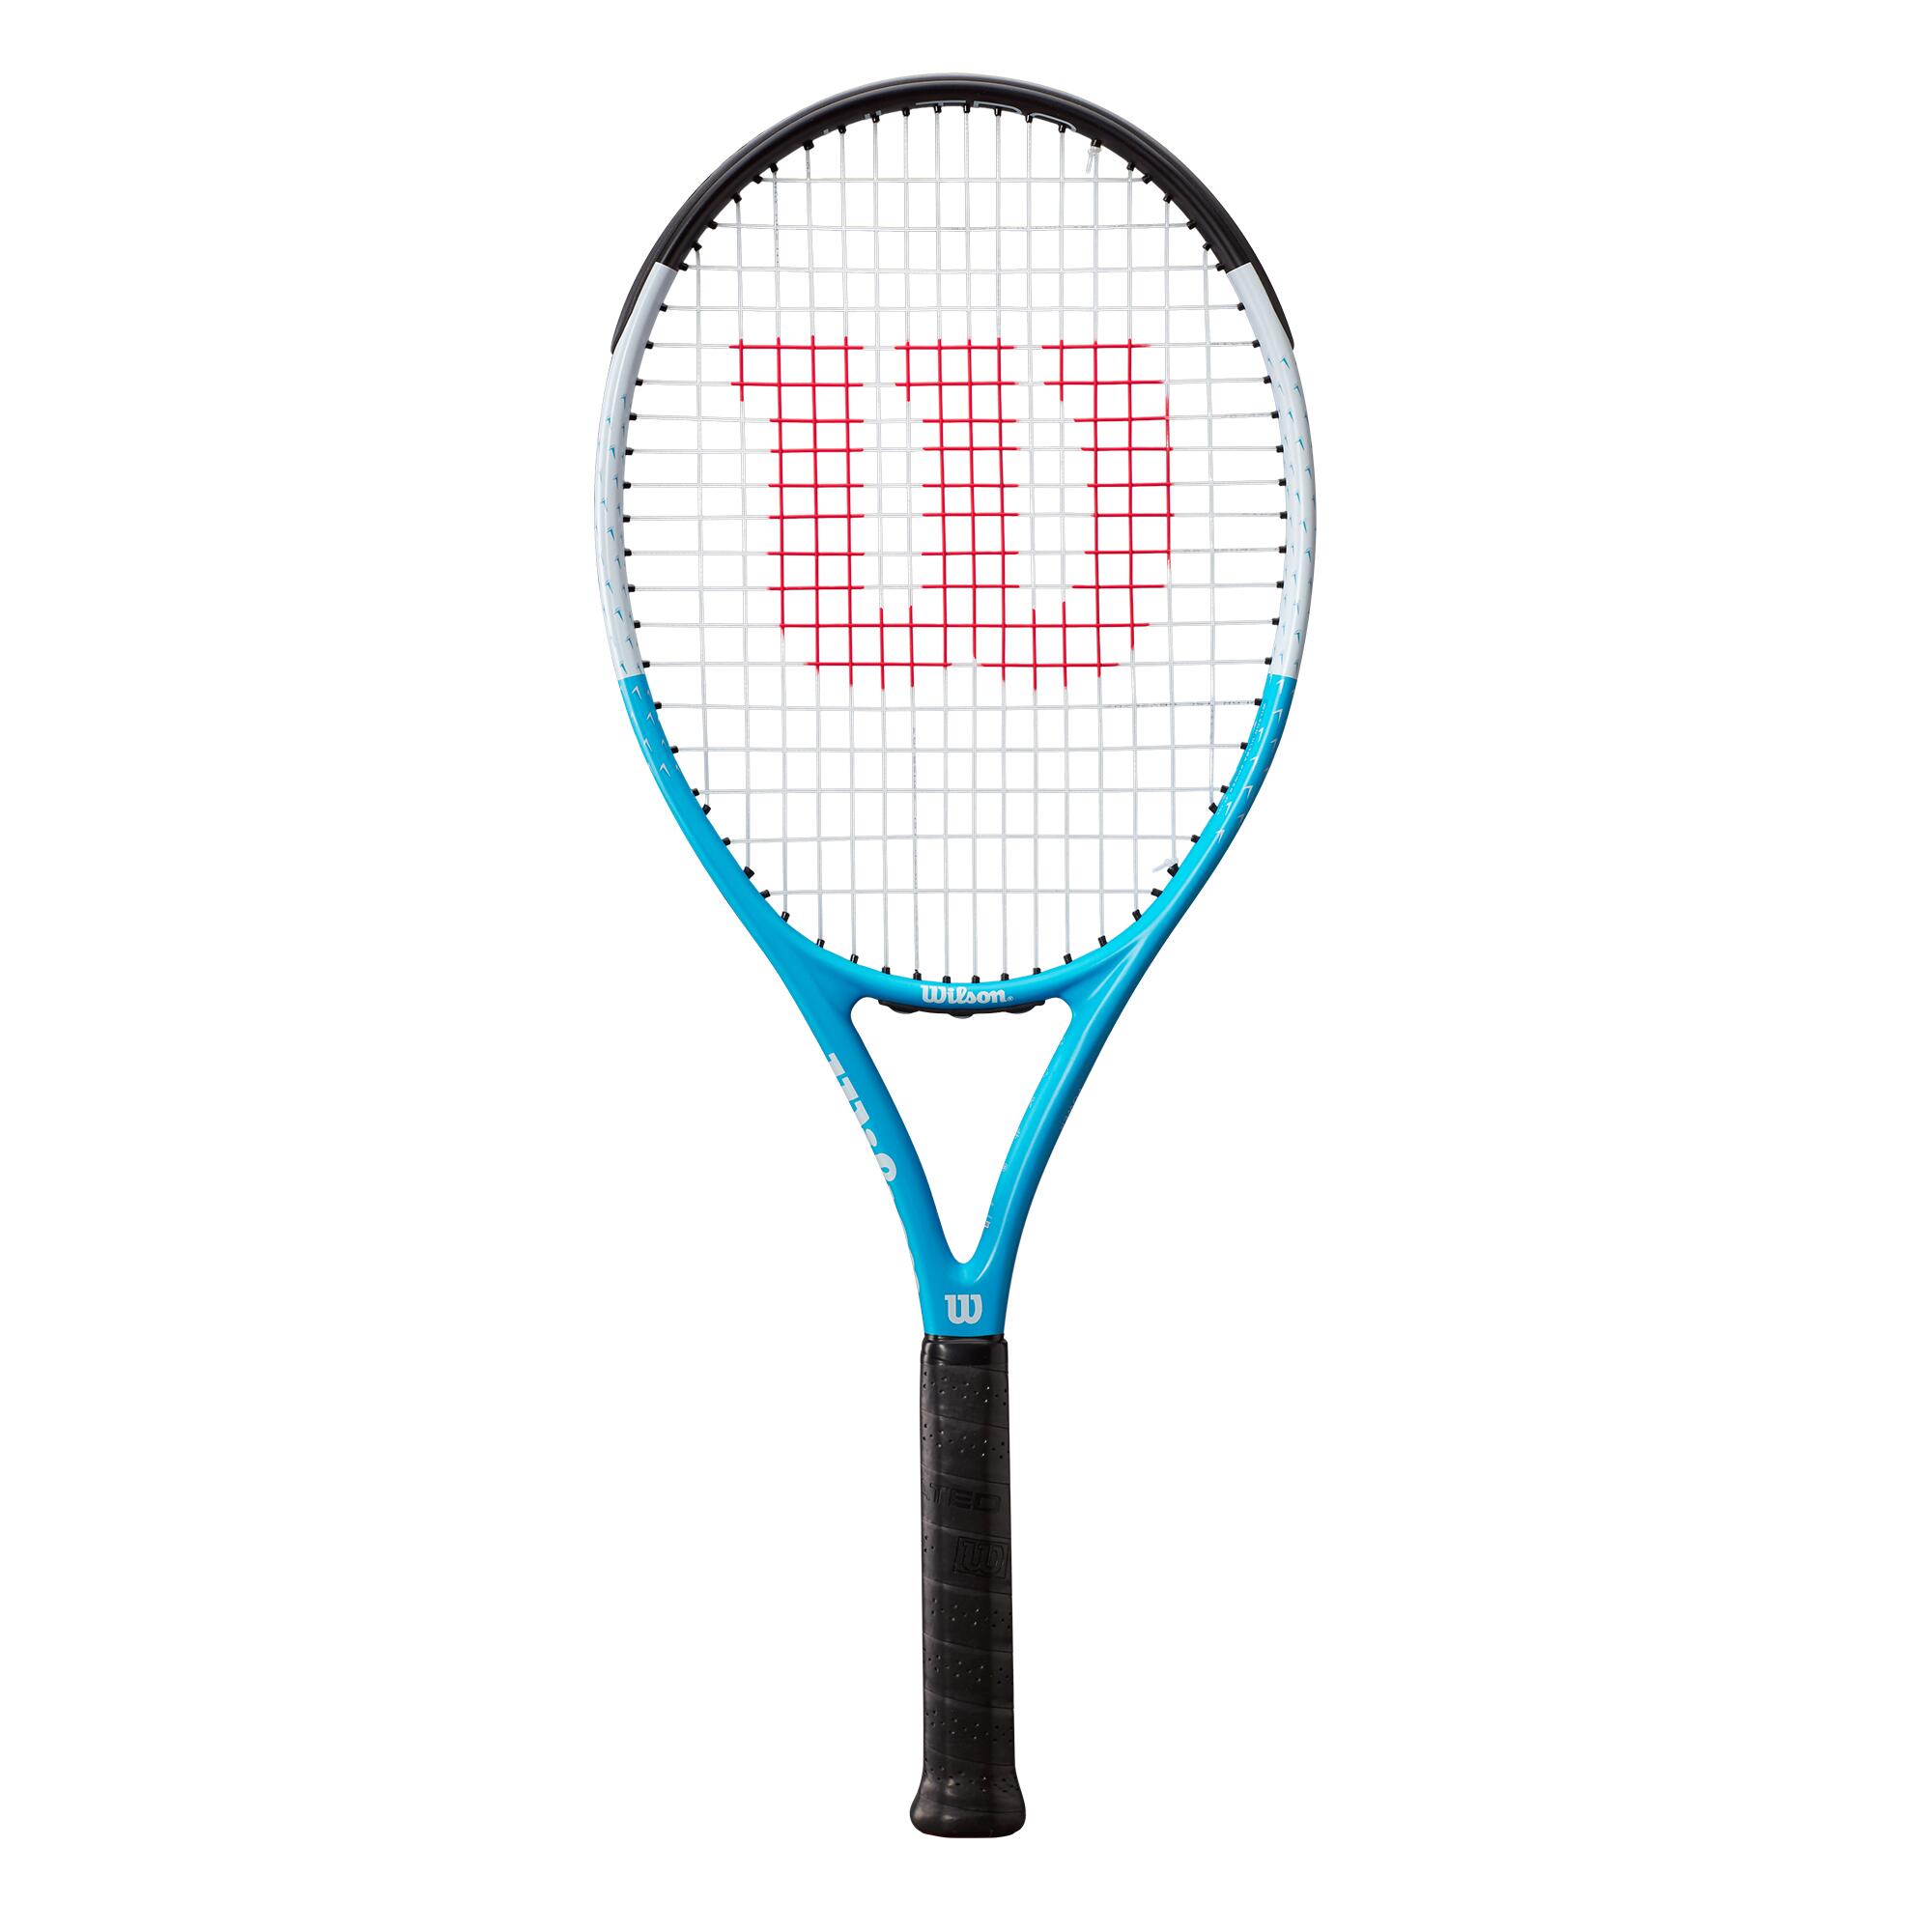 WILSON Wilson Ultra Power RXT 105 Tennis Racket - GRADE A